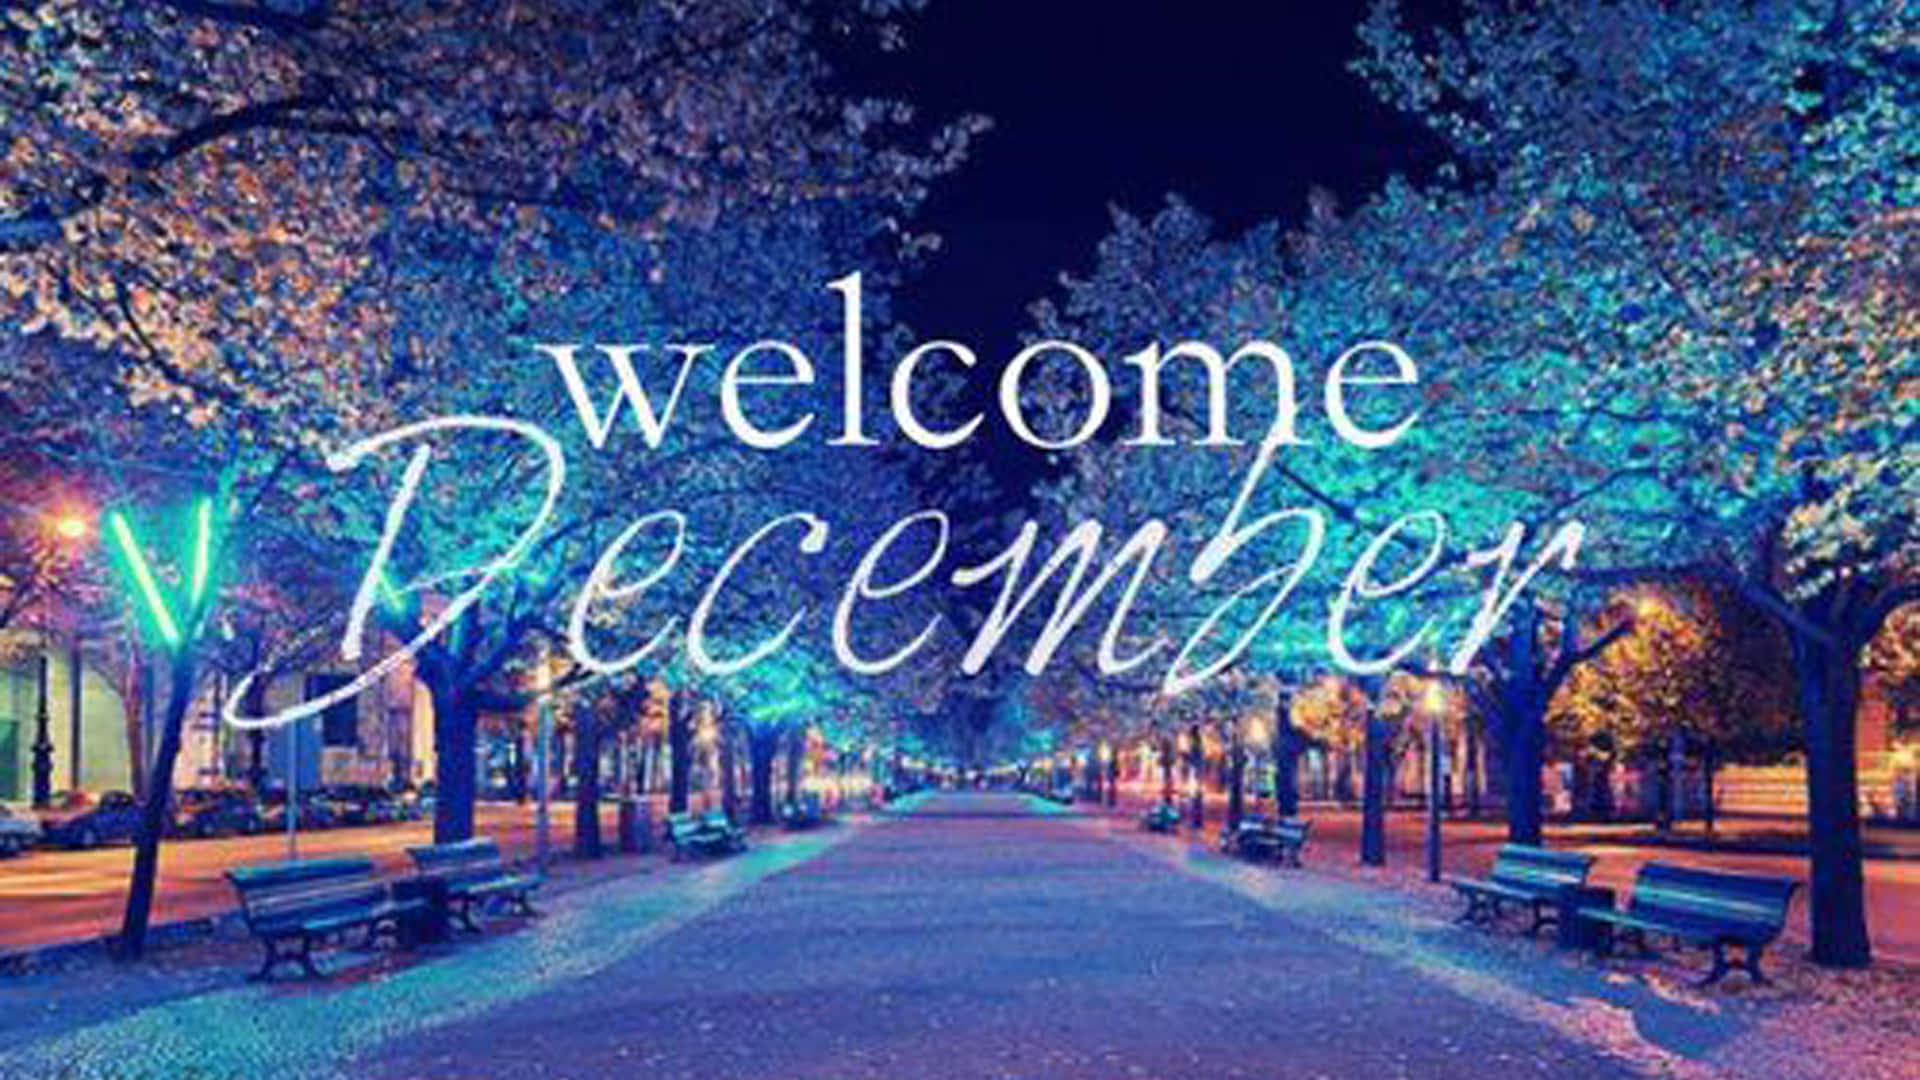 Velkommen Decembers festlige juletræ lys wallpaper Wallpaper